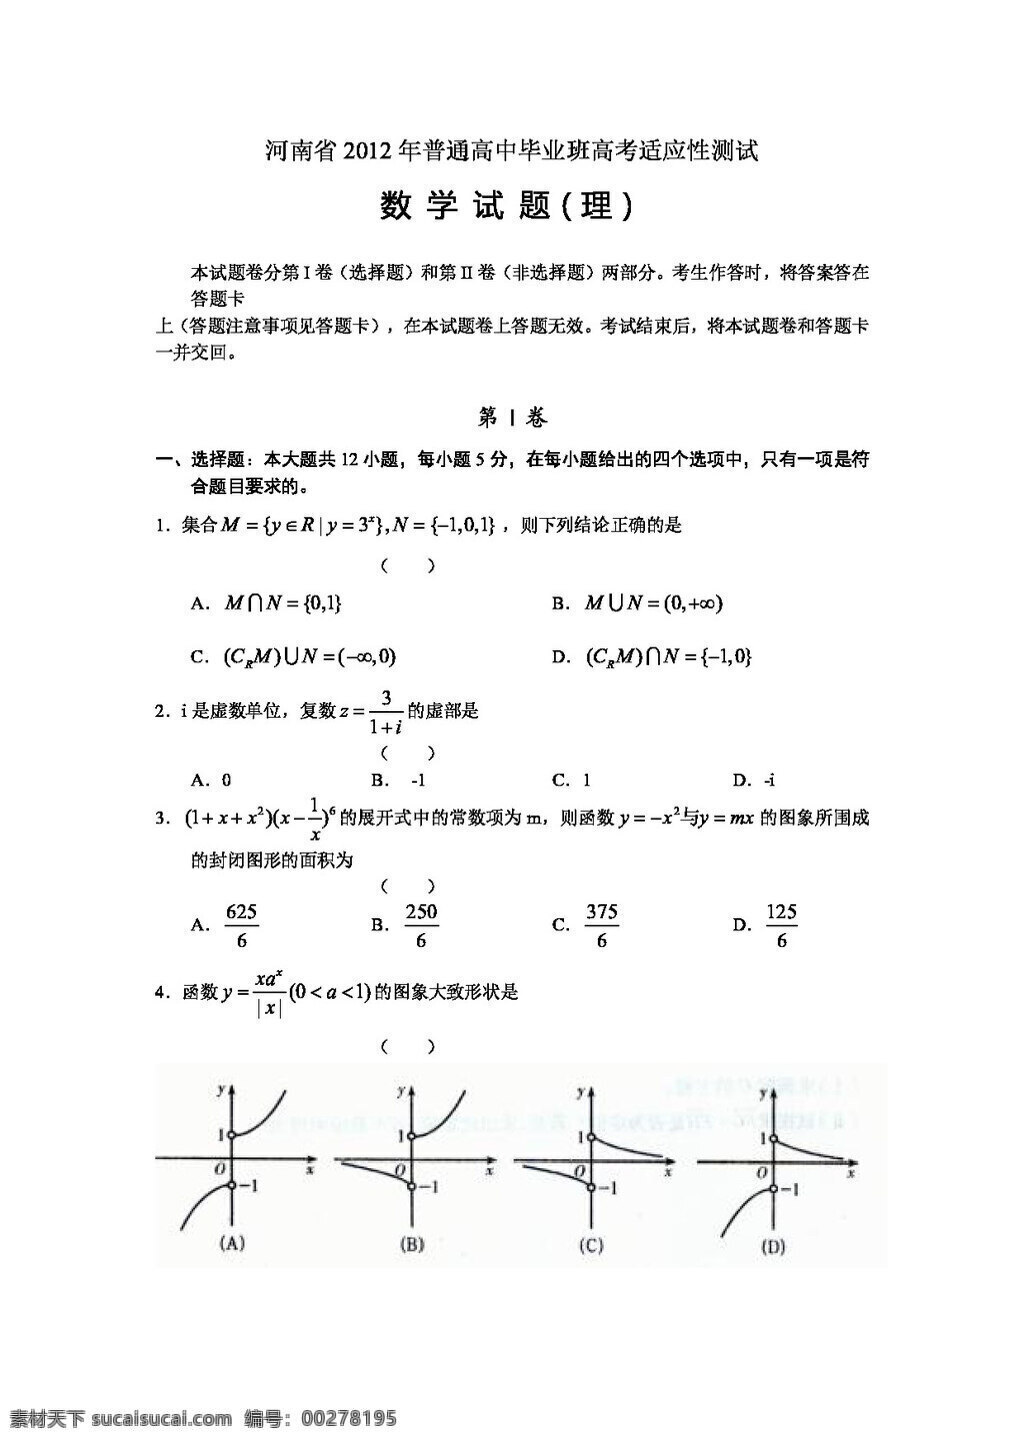 数学 人教 新 课 标 b 版 河南省 普通高中 毕业班 高考 适应性 测试 高考专区 试卷